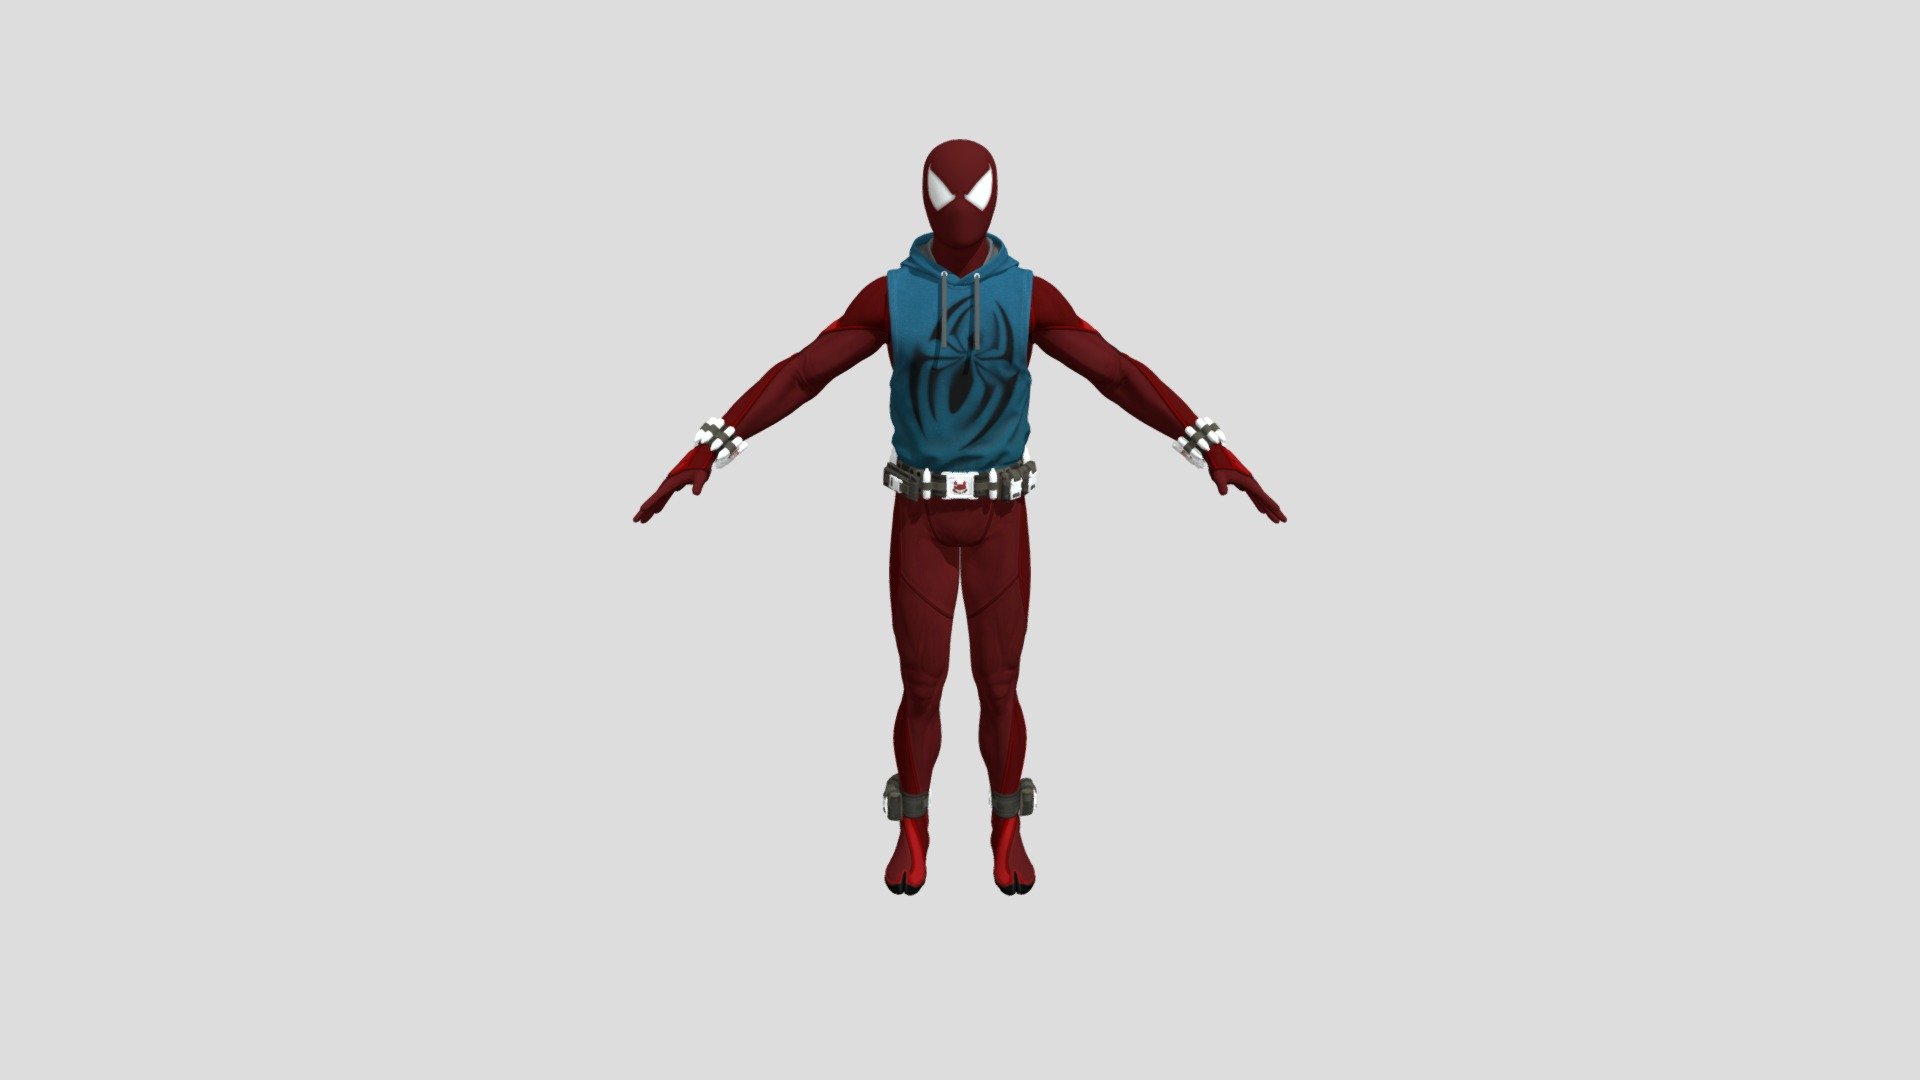 Spiderman Araña Escarlata - 3D model by gabrieel22 (@gabrieel22) [1f7189d]